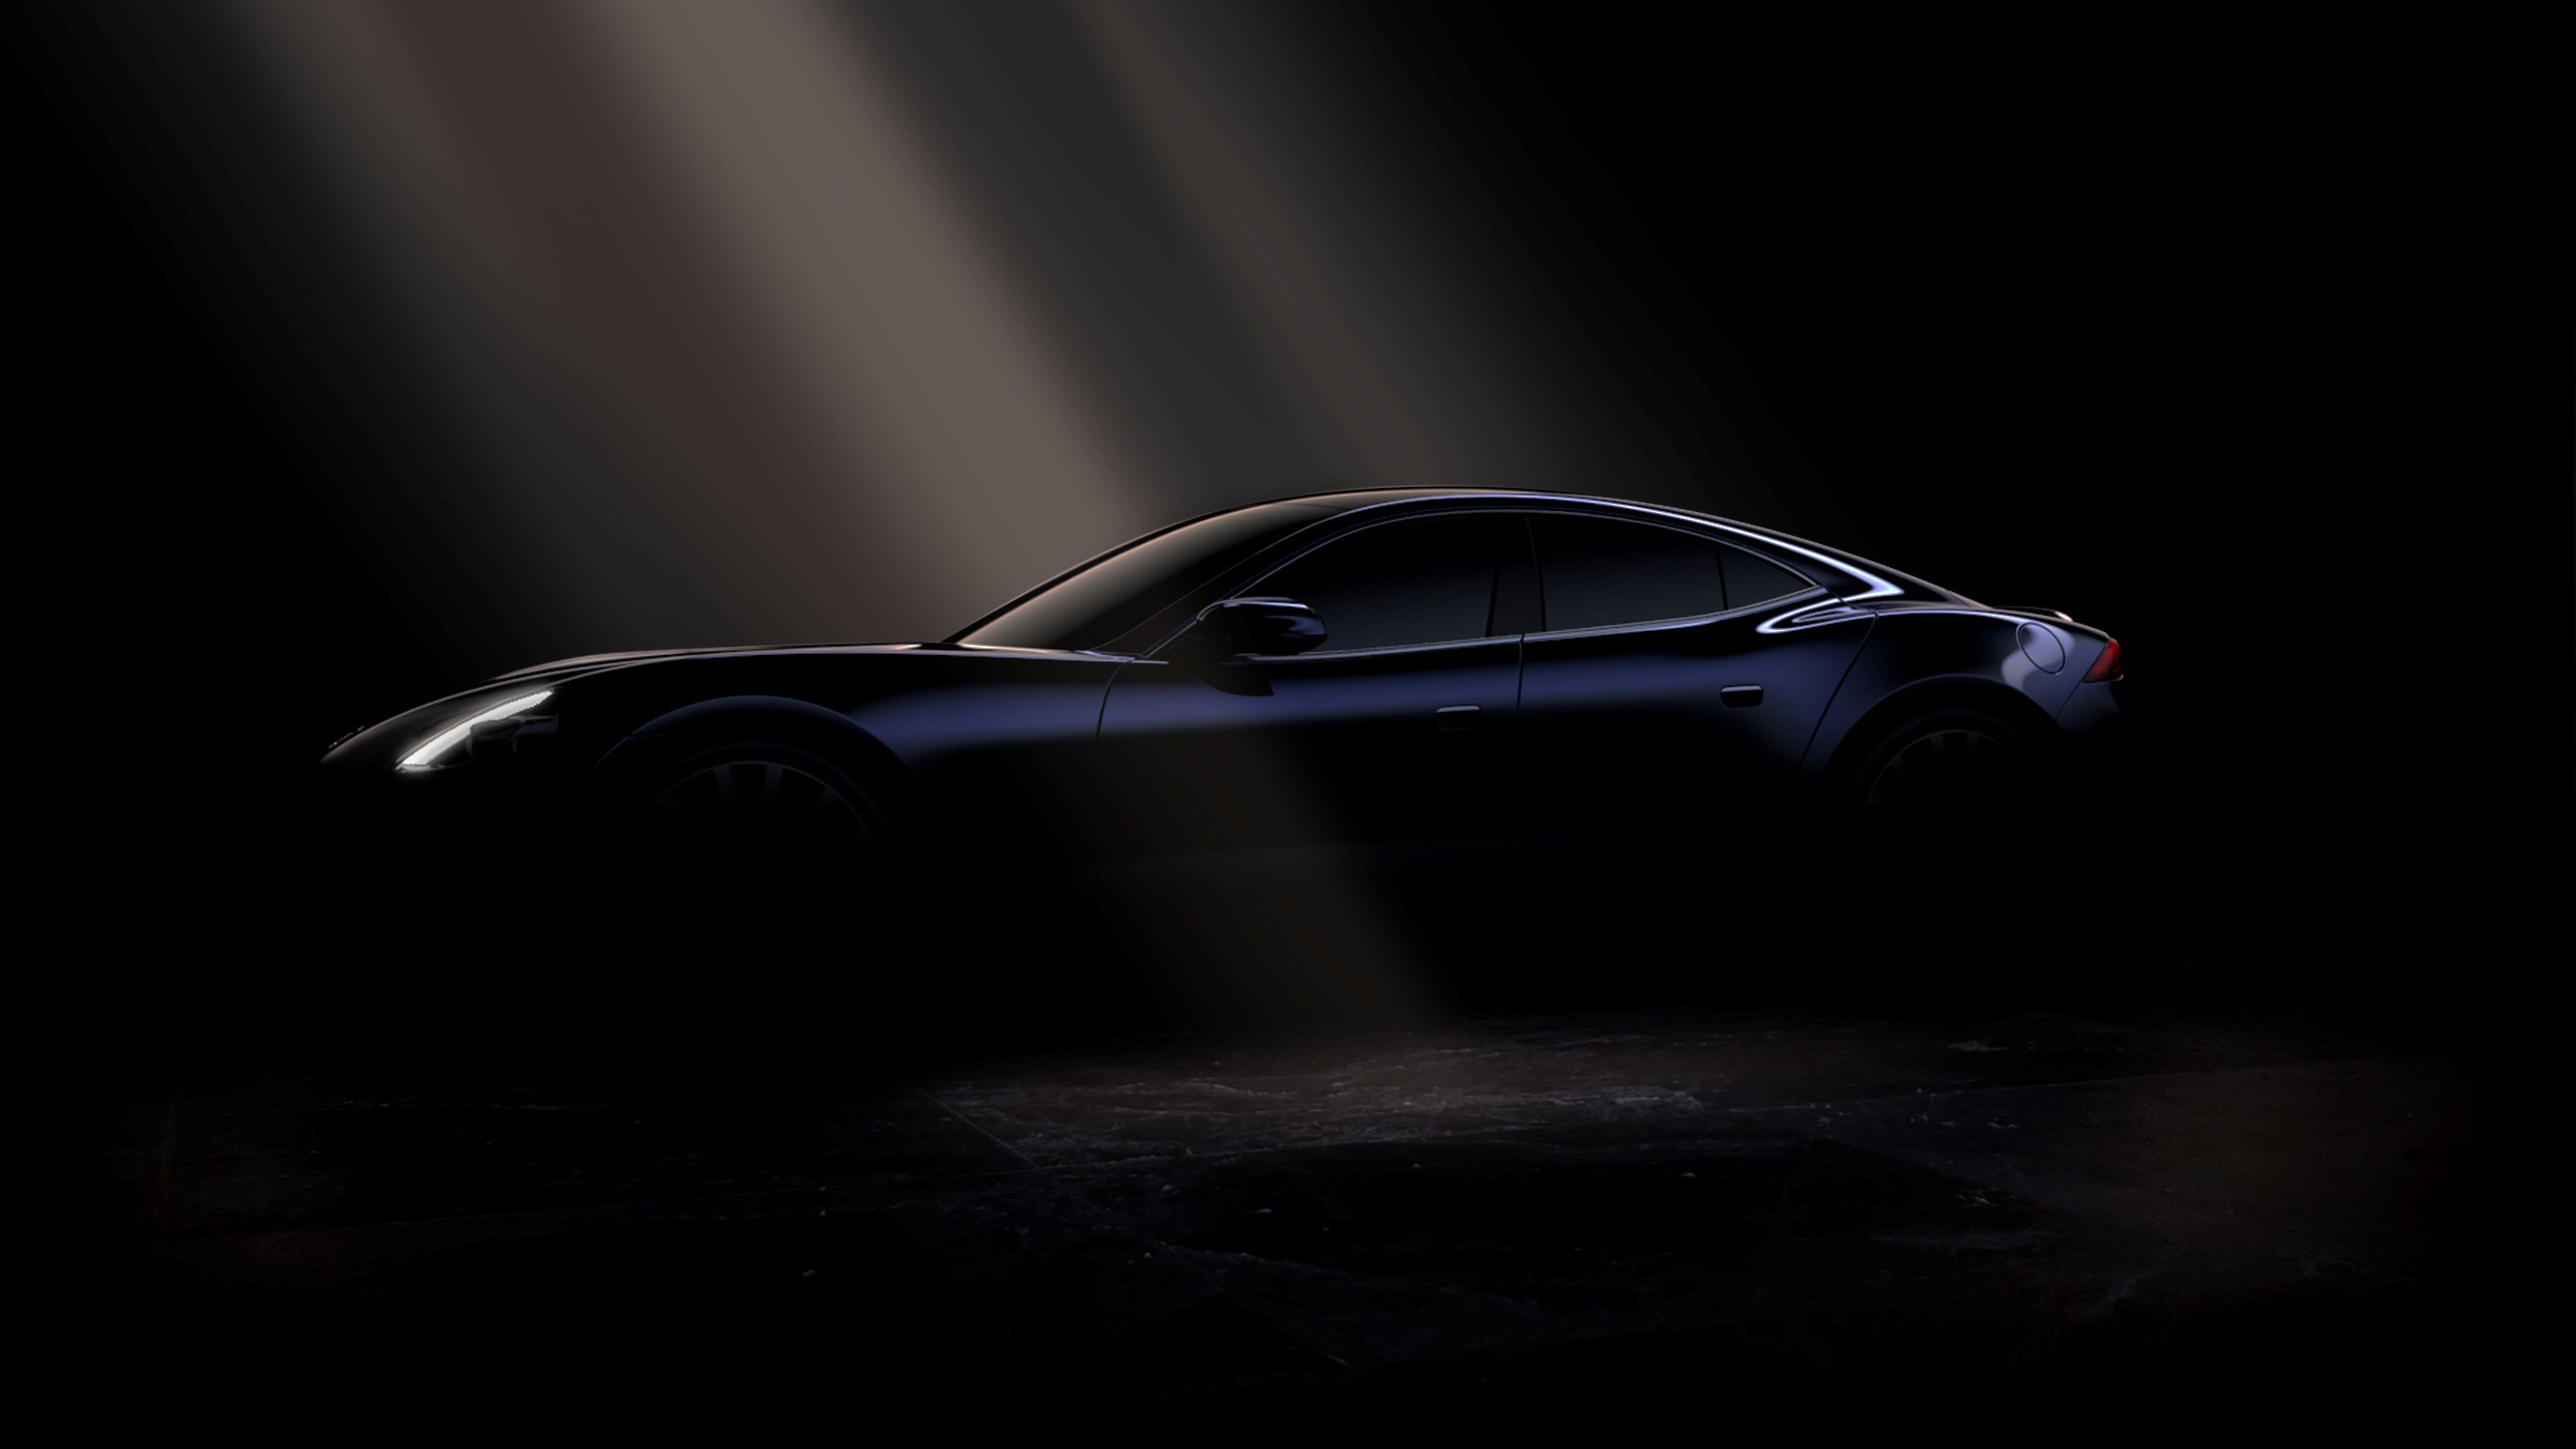 米カルマ、BMW製ツインターボ搭載のPHV高級スポーツカー、新型「レヴェーロ」を披露